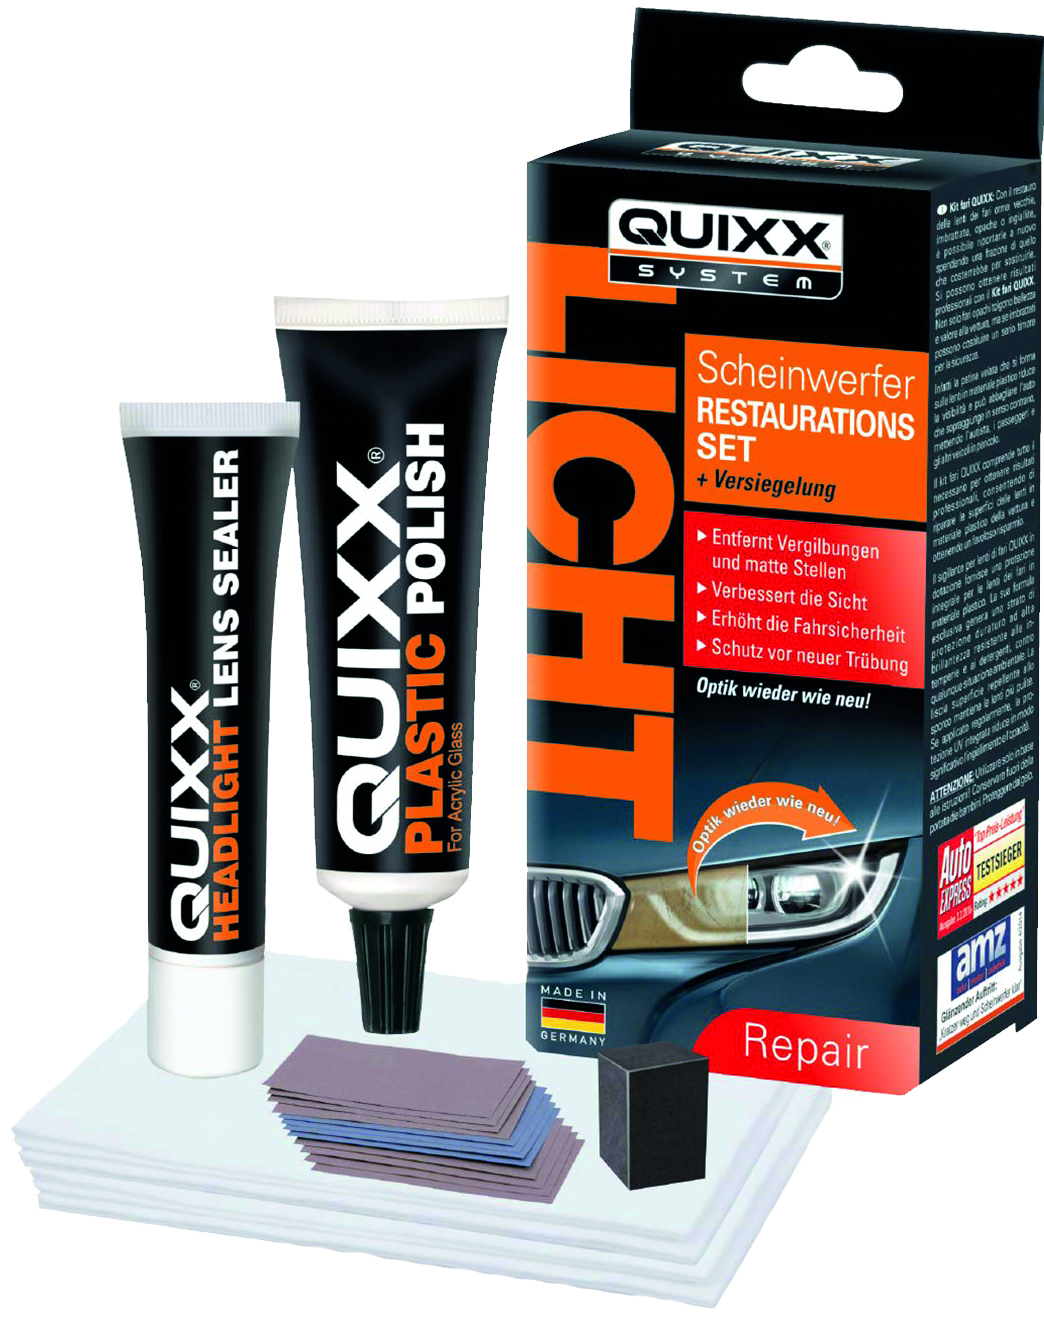 Quixx Scheinwerfer-Restaurations-Kit